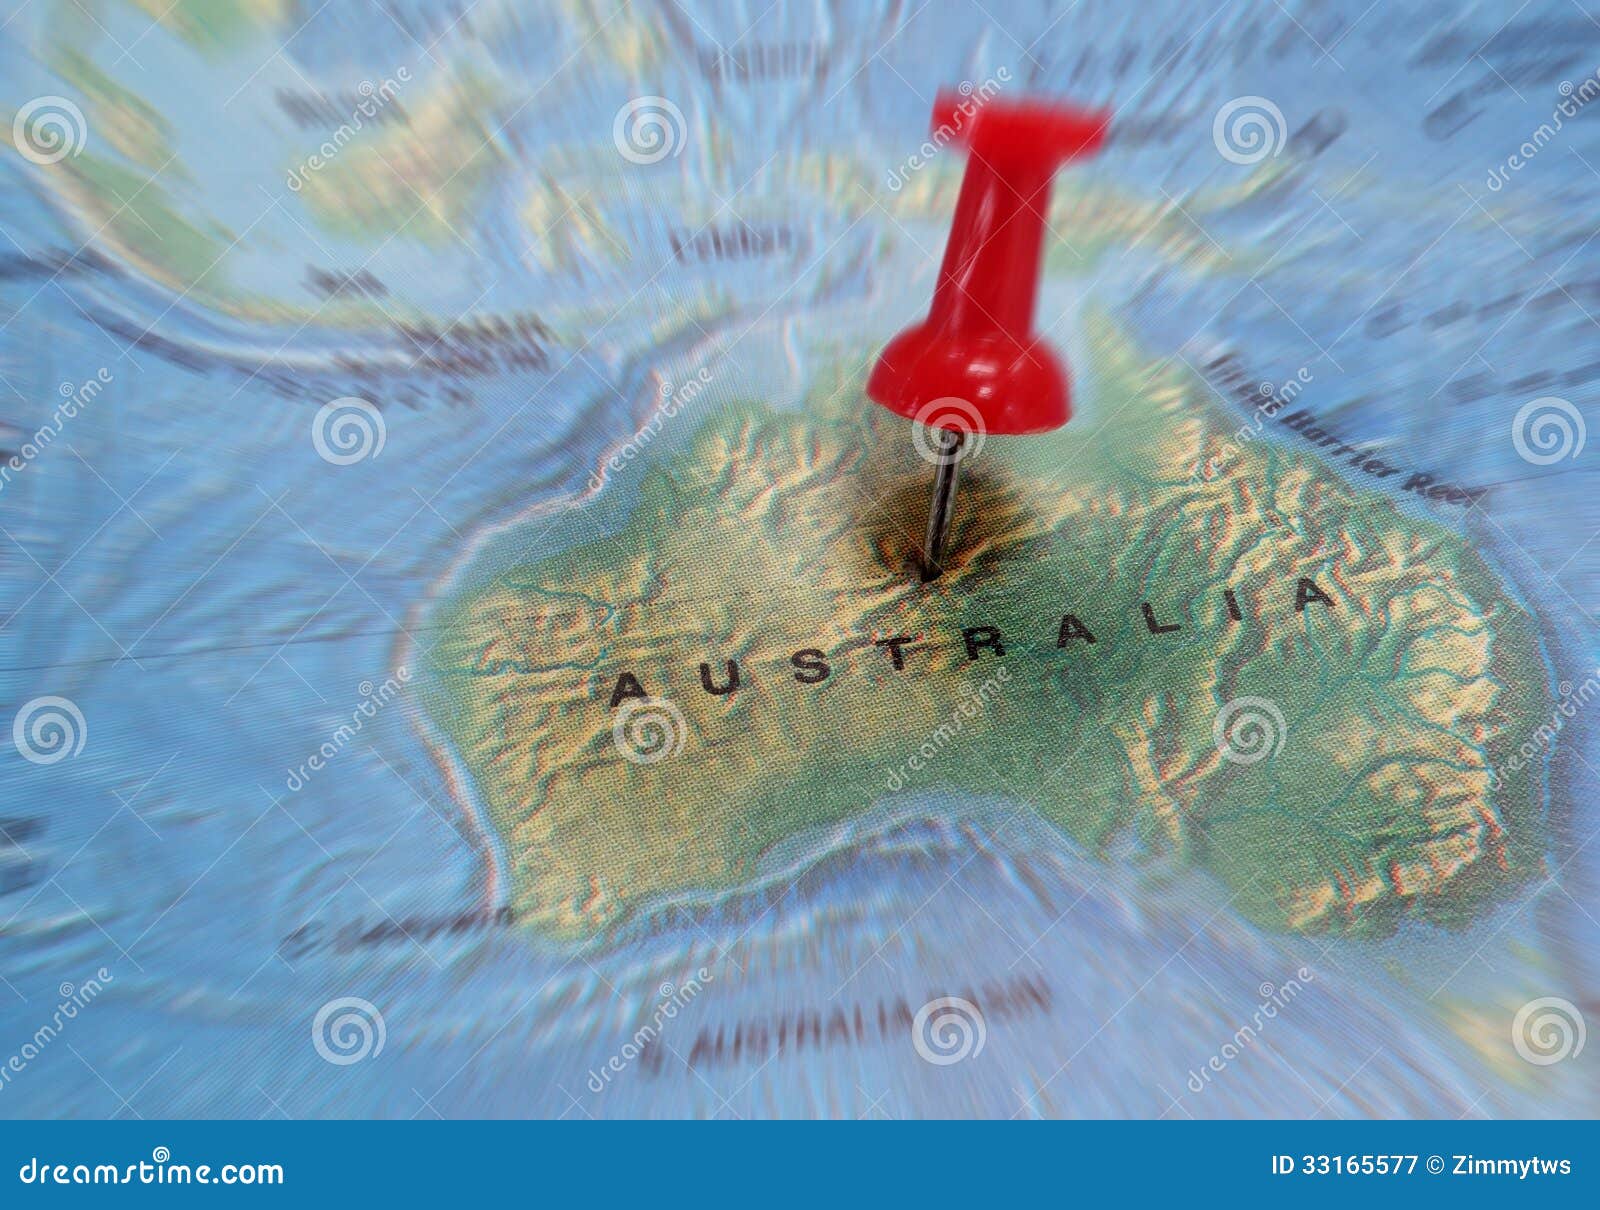 Mapa de Australia. Mapa australiano con un perno rojo en el centro